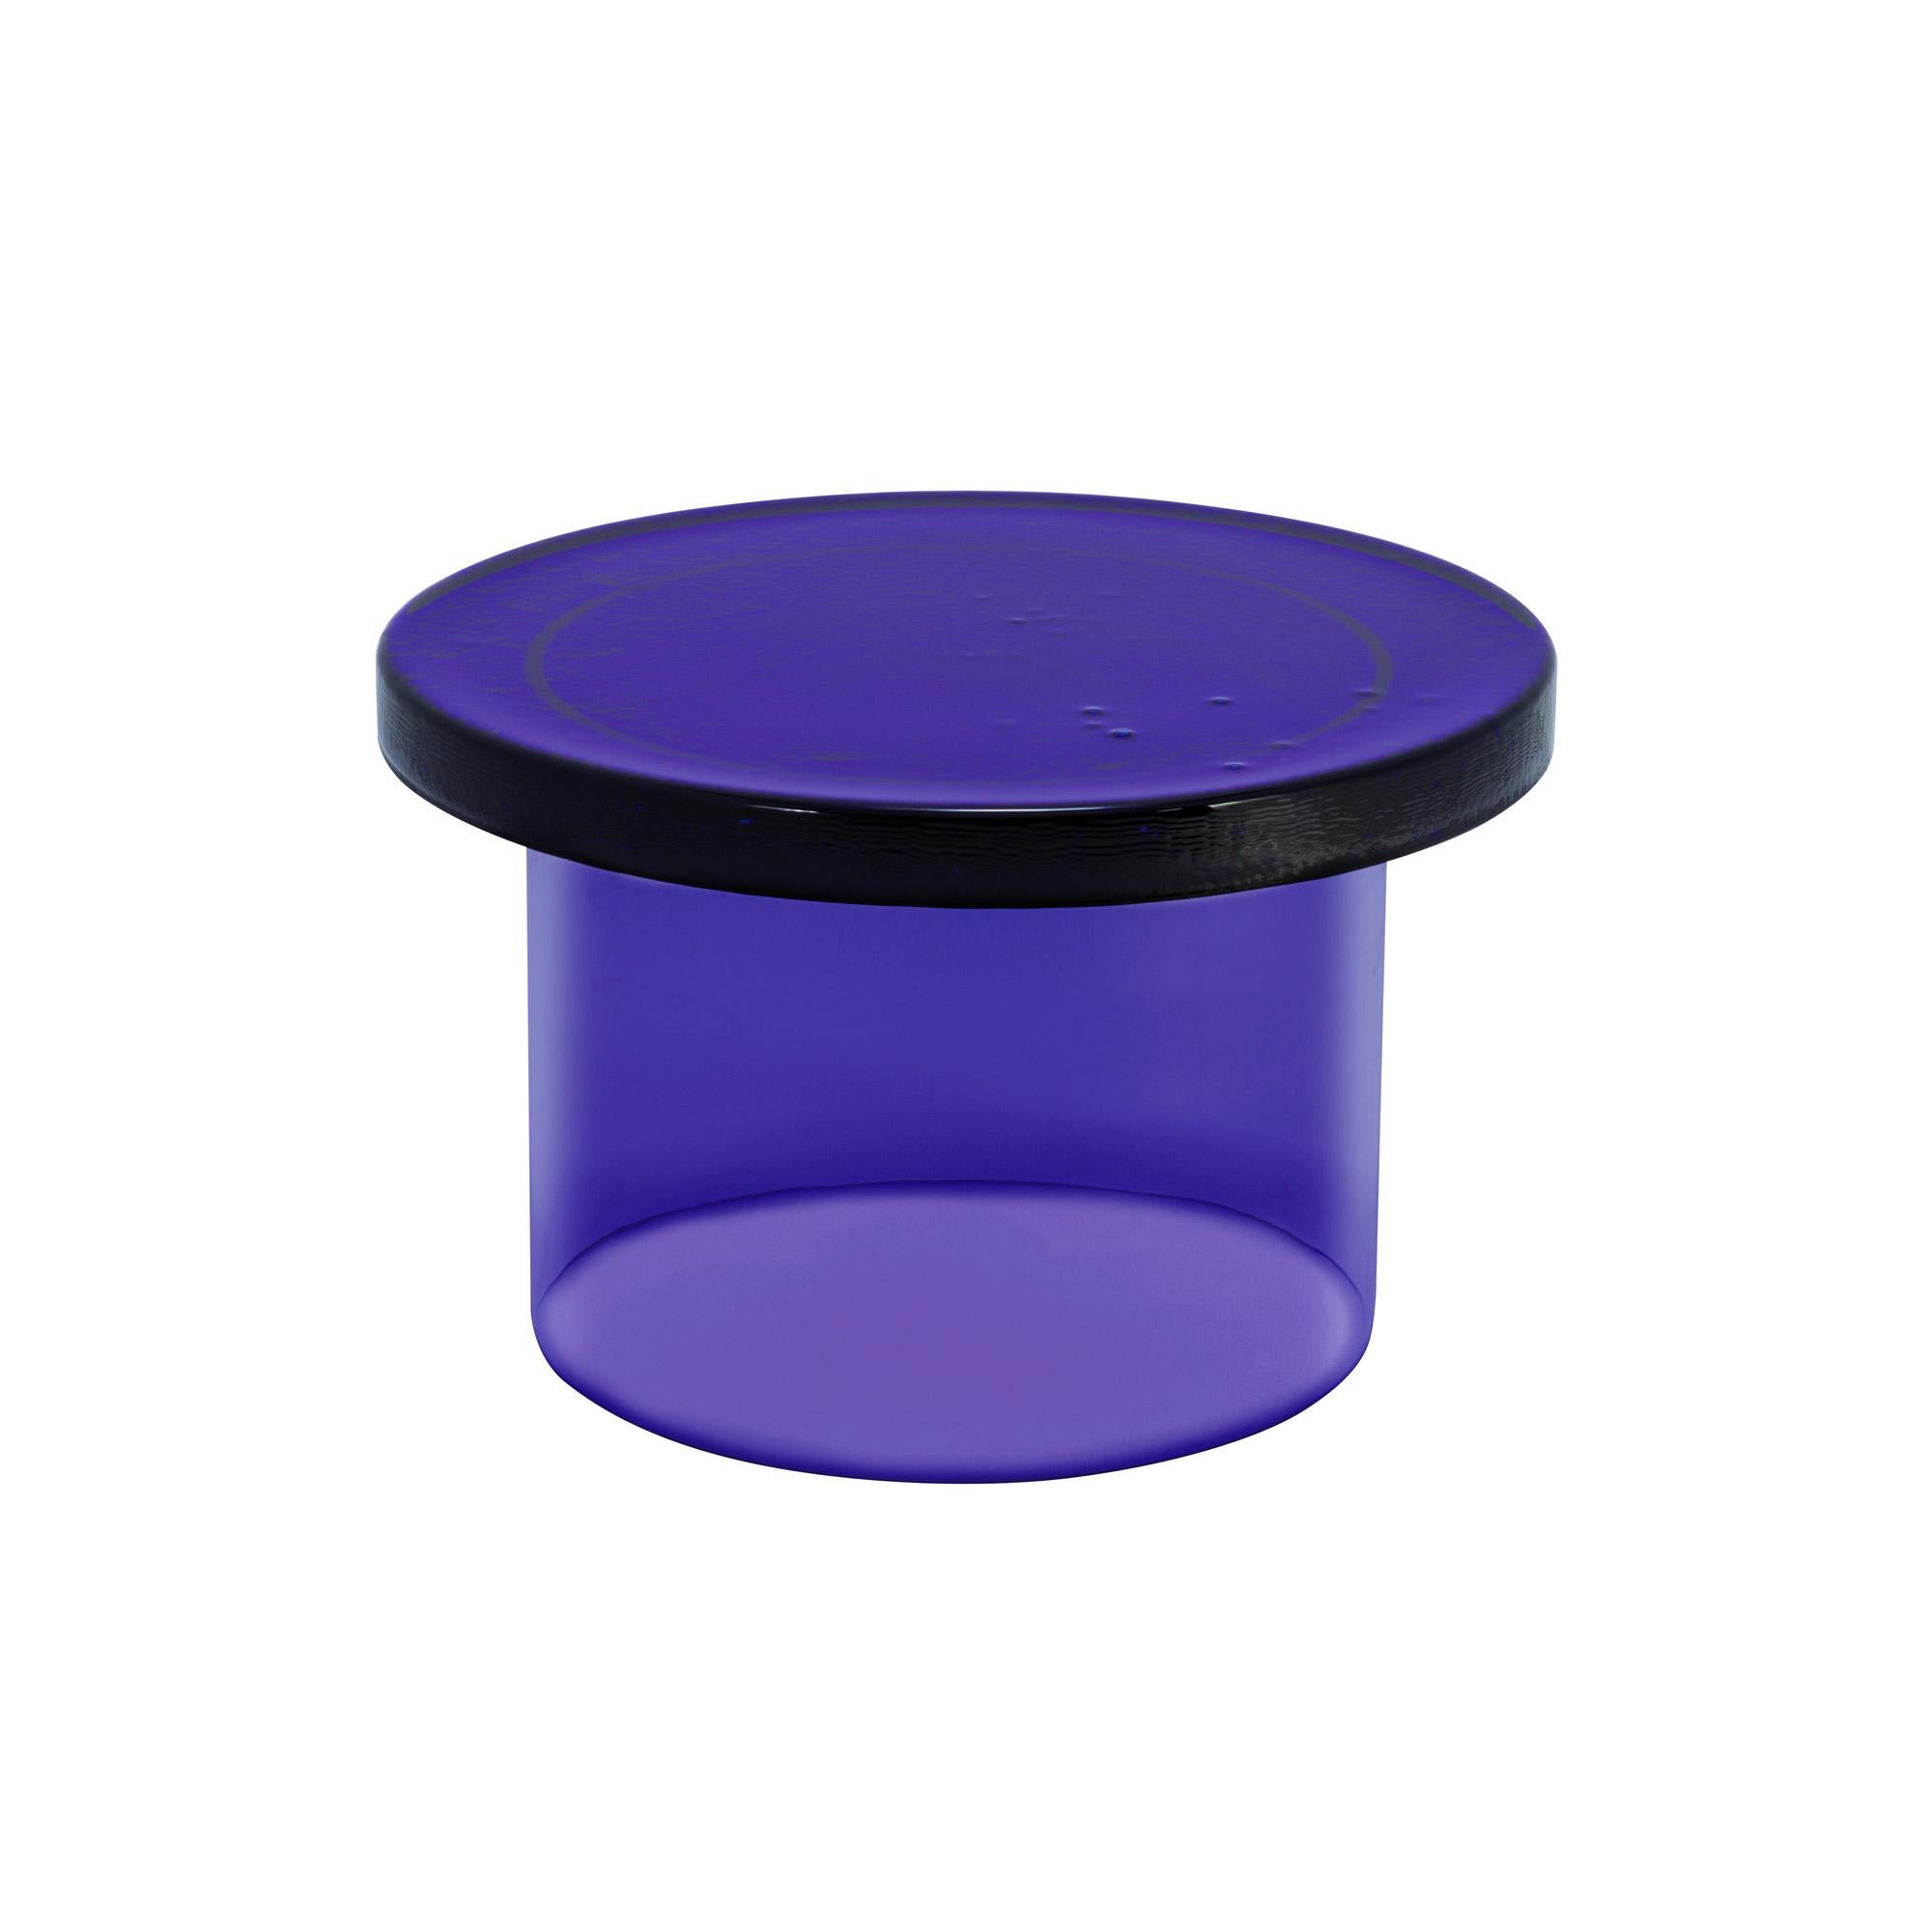 Table basse Alwa trois grands bleus par Pulpo
Dimensions : D56 x H35 cm
MATERIAL : verre moulé et soufflé à la main

Disponible également en différentes couleurs.

Normalement, le verre est considéré comme un matériau léger aux arêtes vives. En